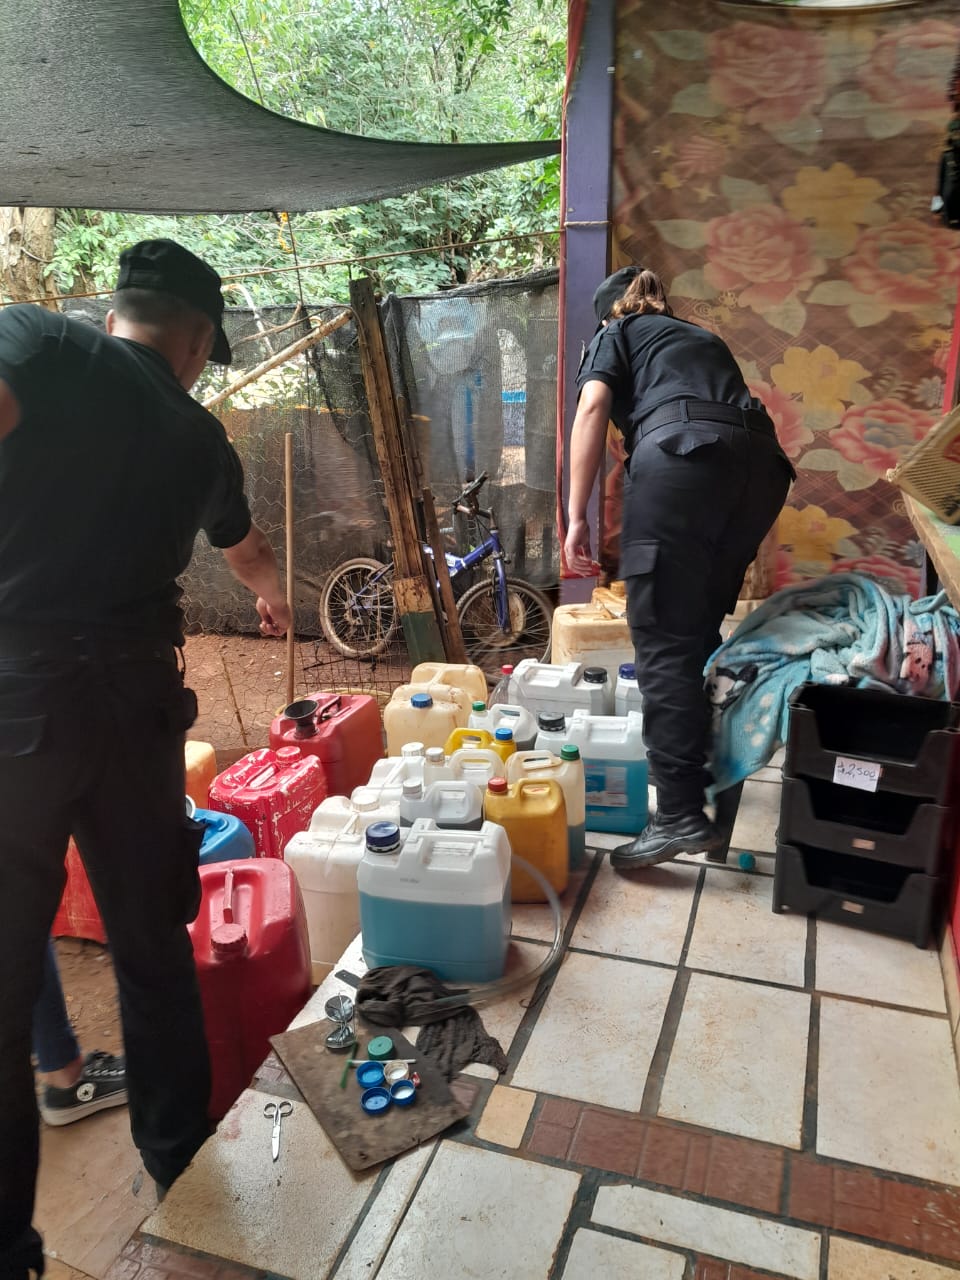 Detectaron venta ilegal de combustible en una vivienda de Iguazú